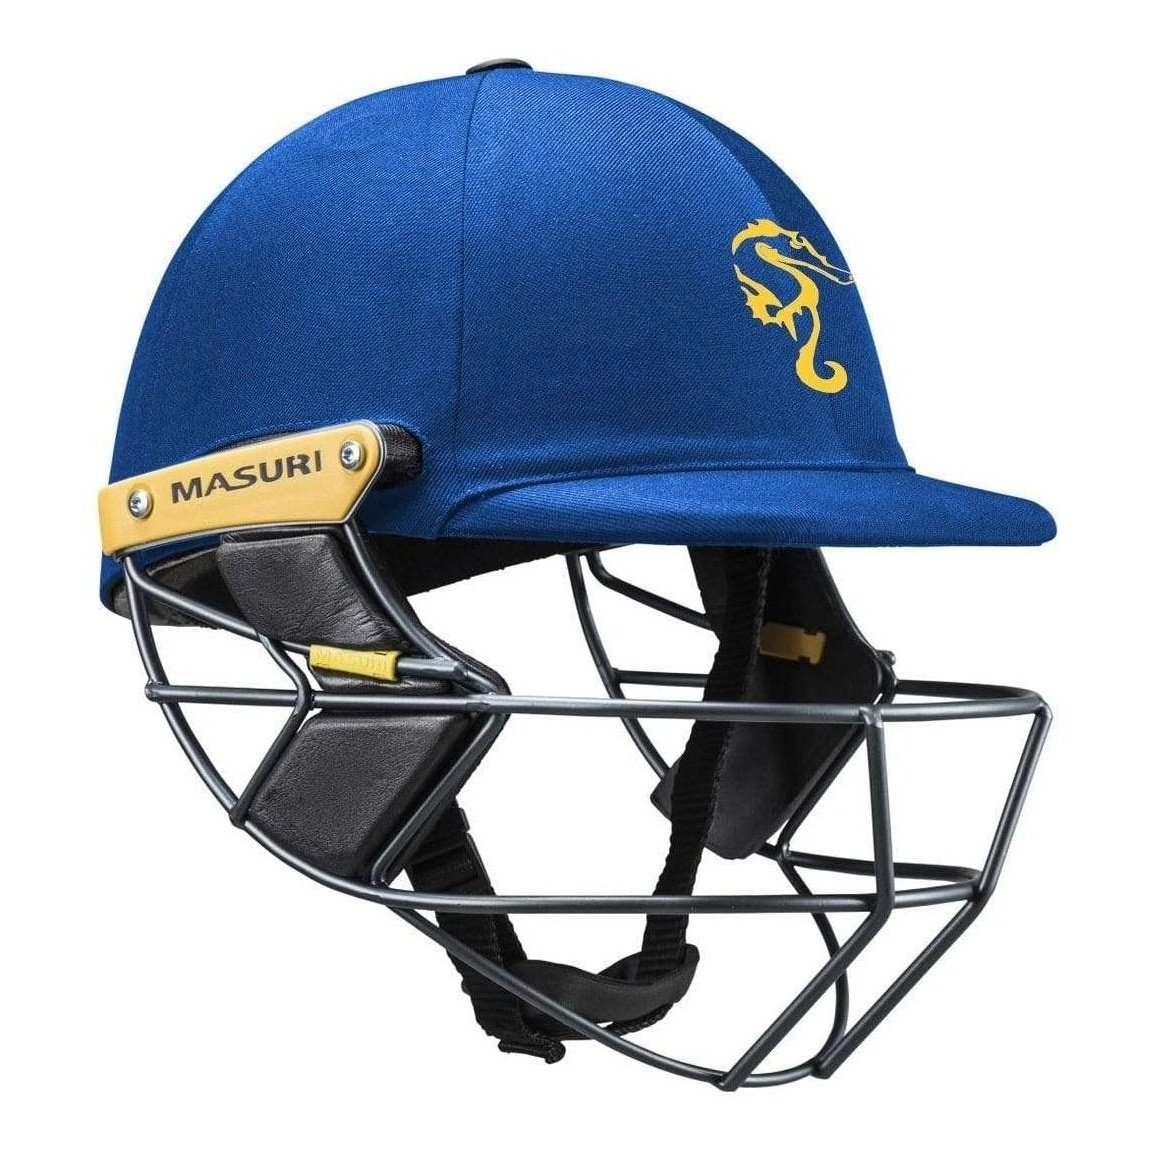 Masuri Club Helmet Williamstown Colts Cricket Club Helmet